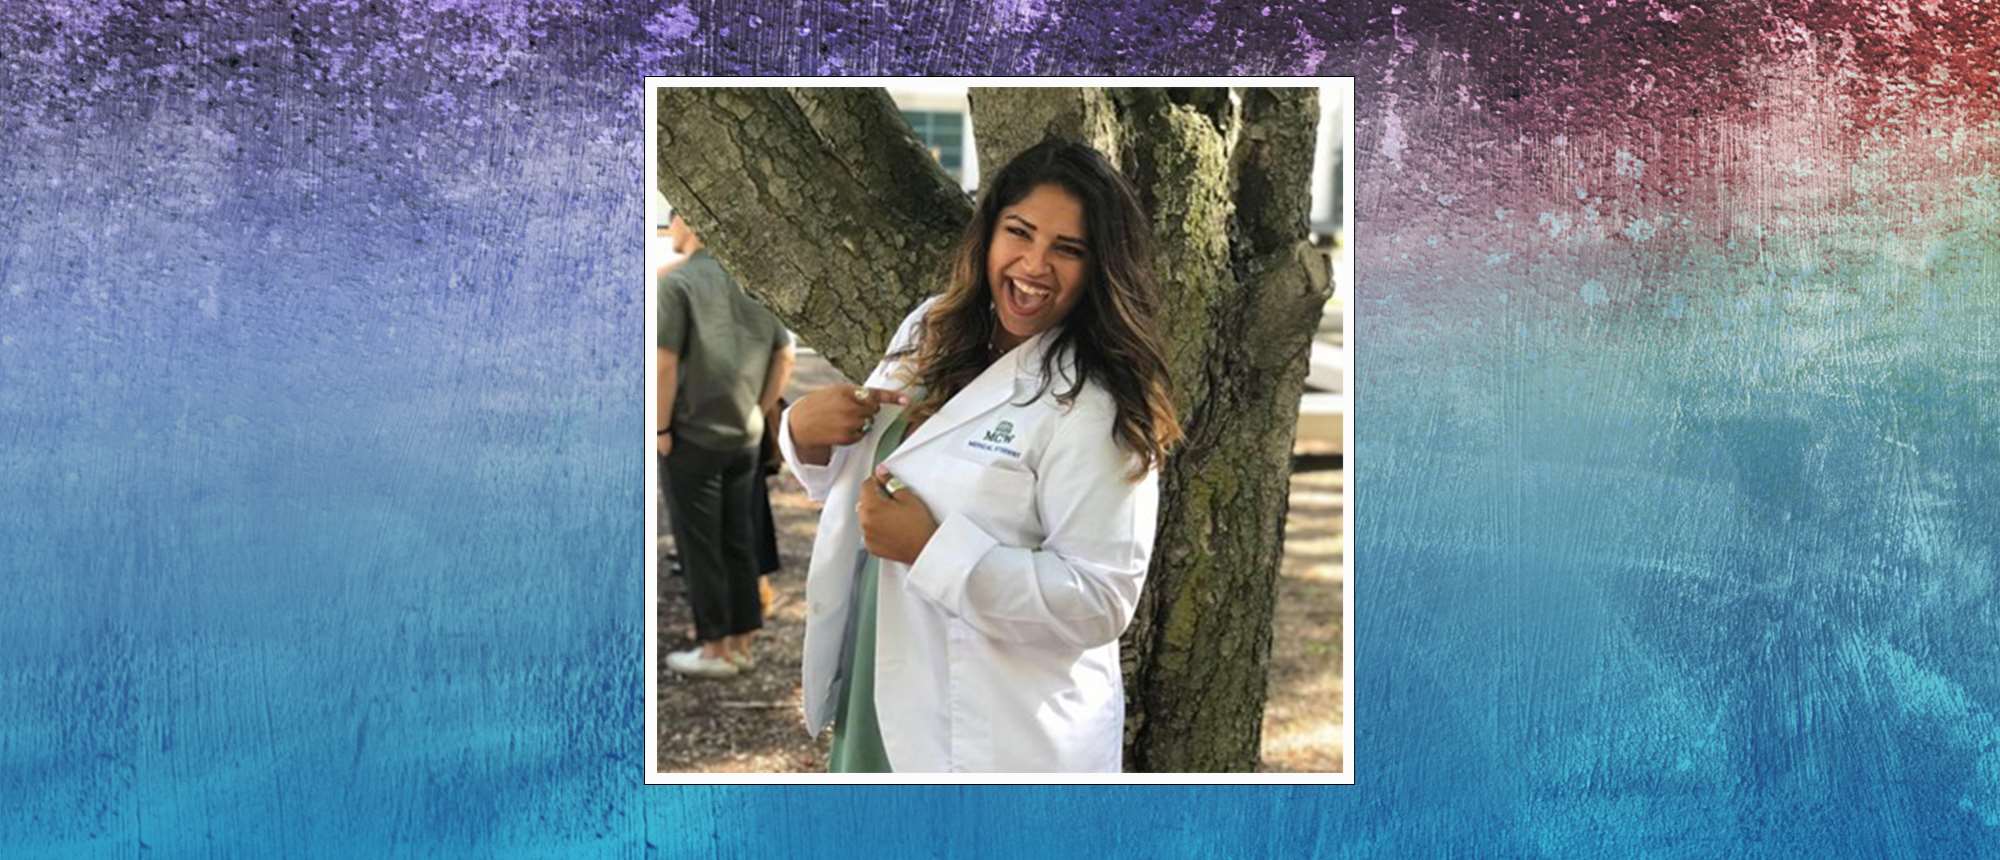 果冻影院 student explores Native American heritage during her path in medicine